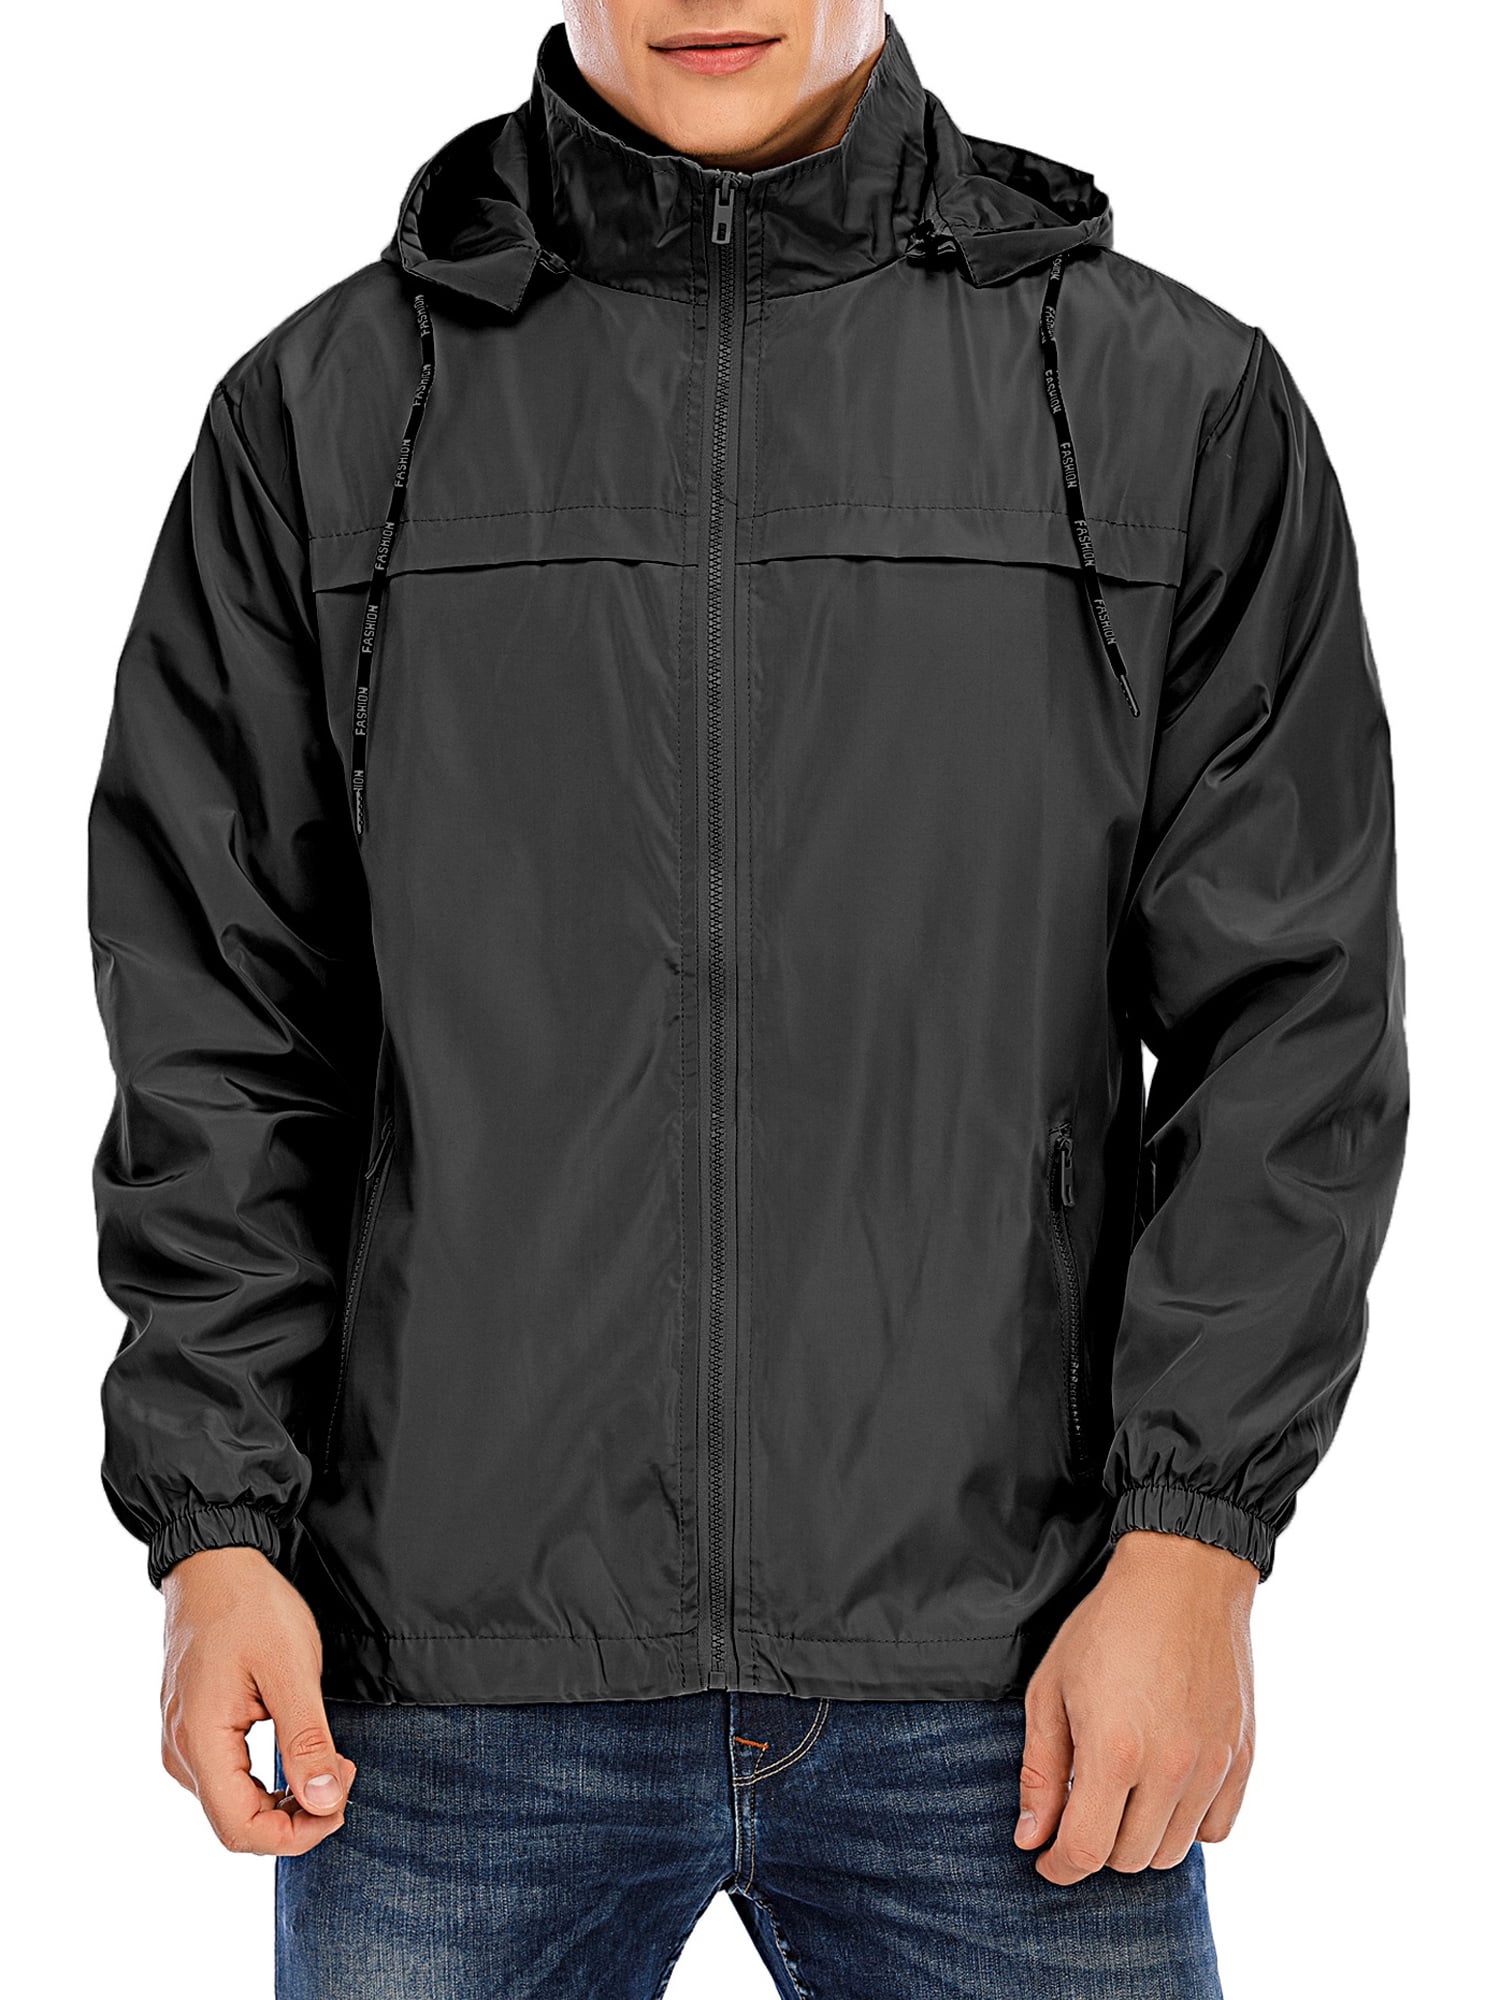 LELINTA Men's Outdoor Lightweight Jacket Windbreaker Packable Jacket ...